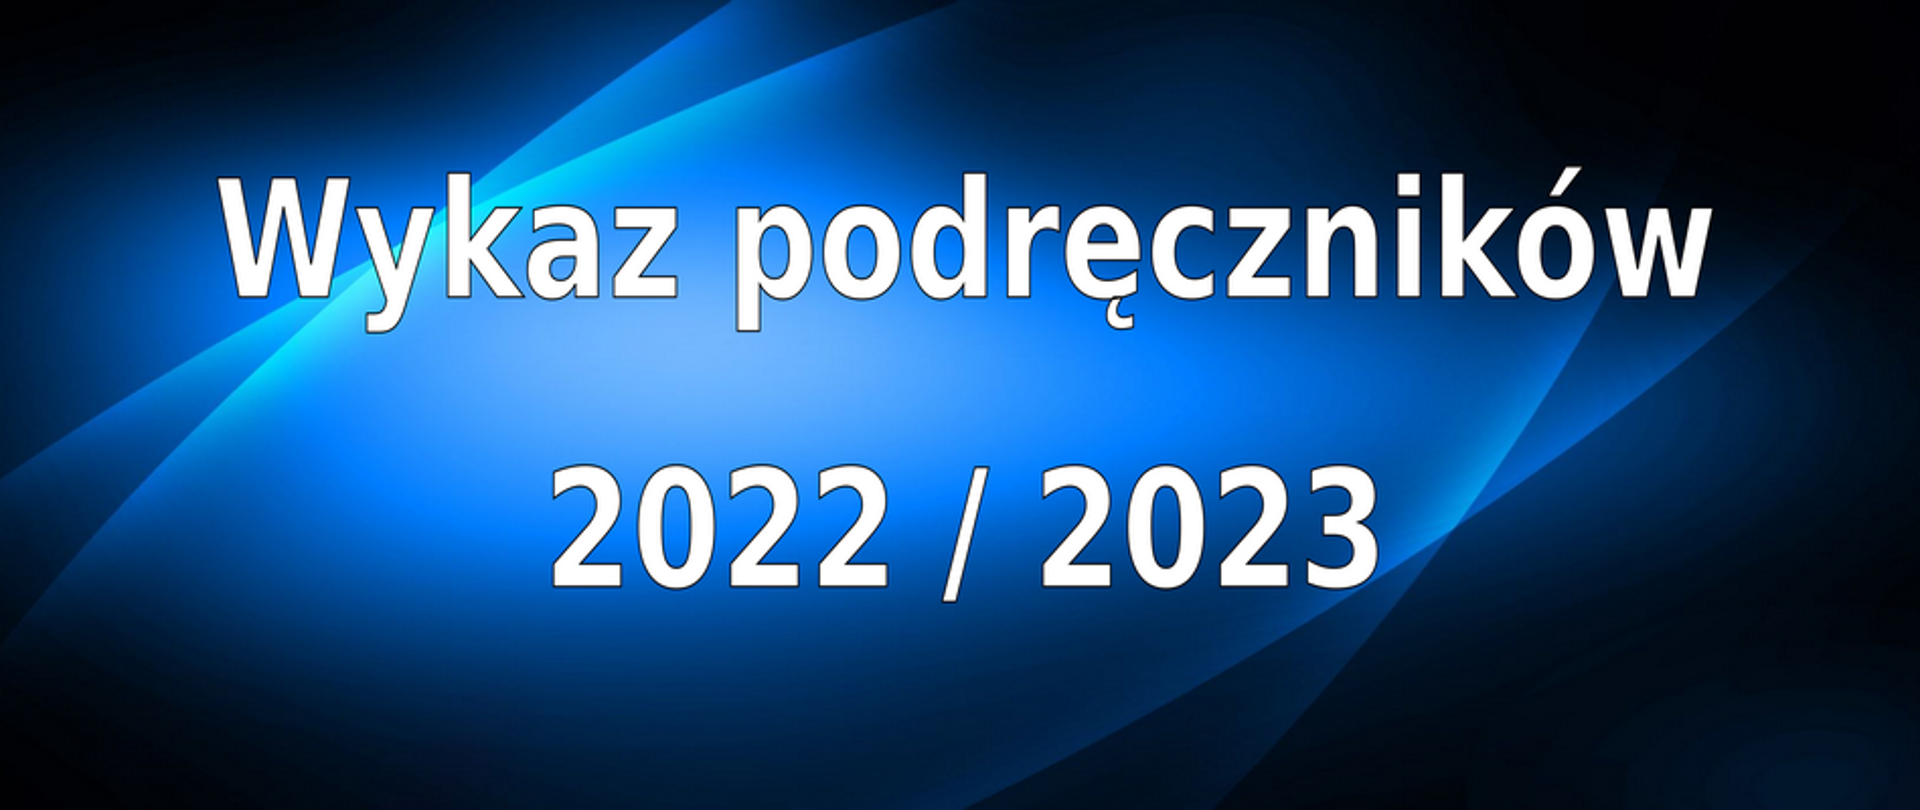 Prostokątny baner; tło w odcieniach niebieskiego; tekst wyśrodkowany: Wykaz podręczników, a poniżej: 2022 / 2023